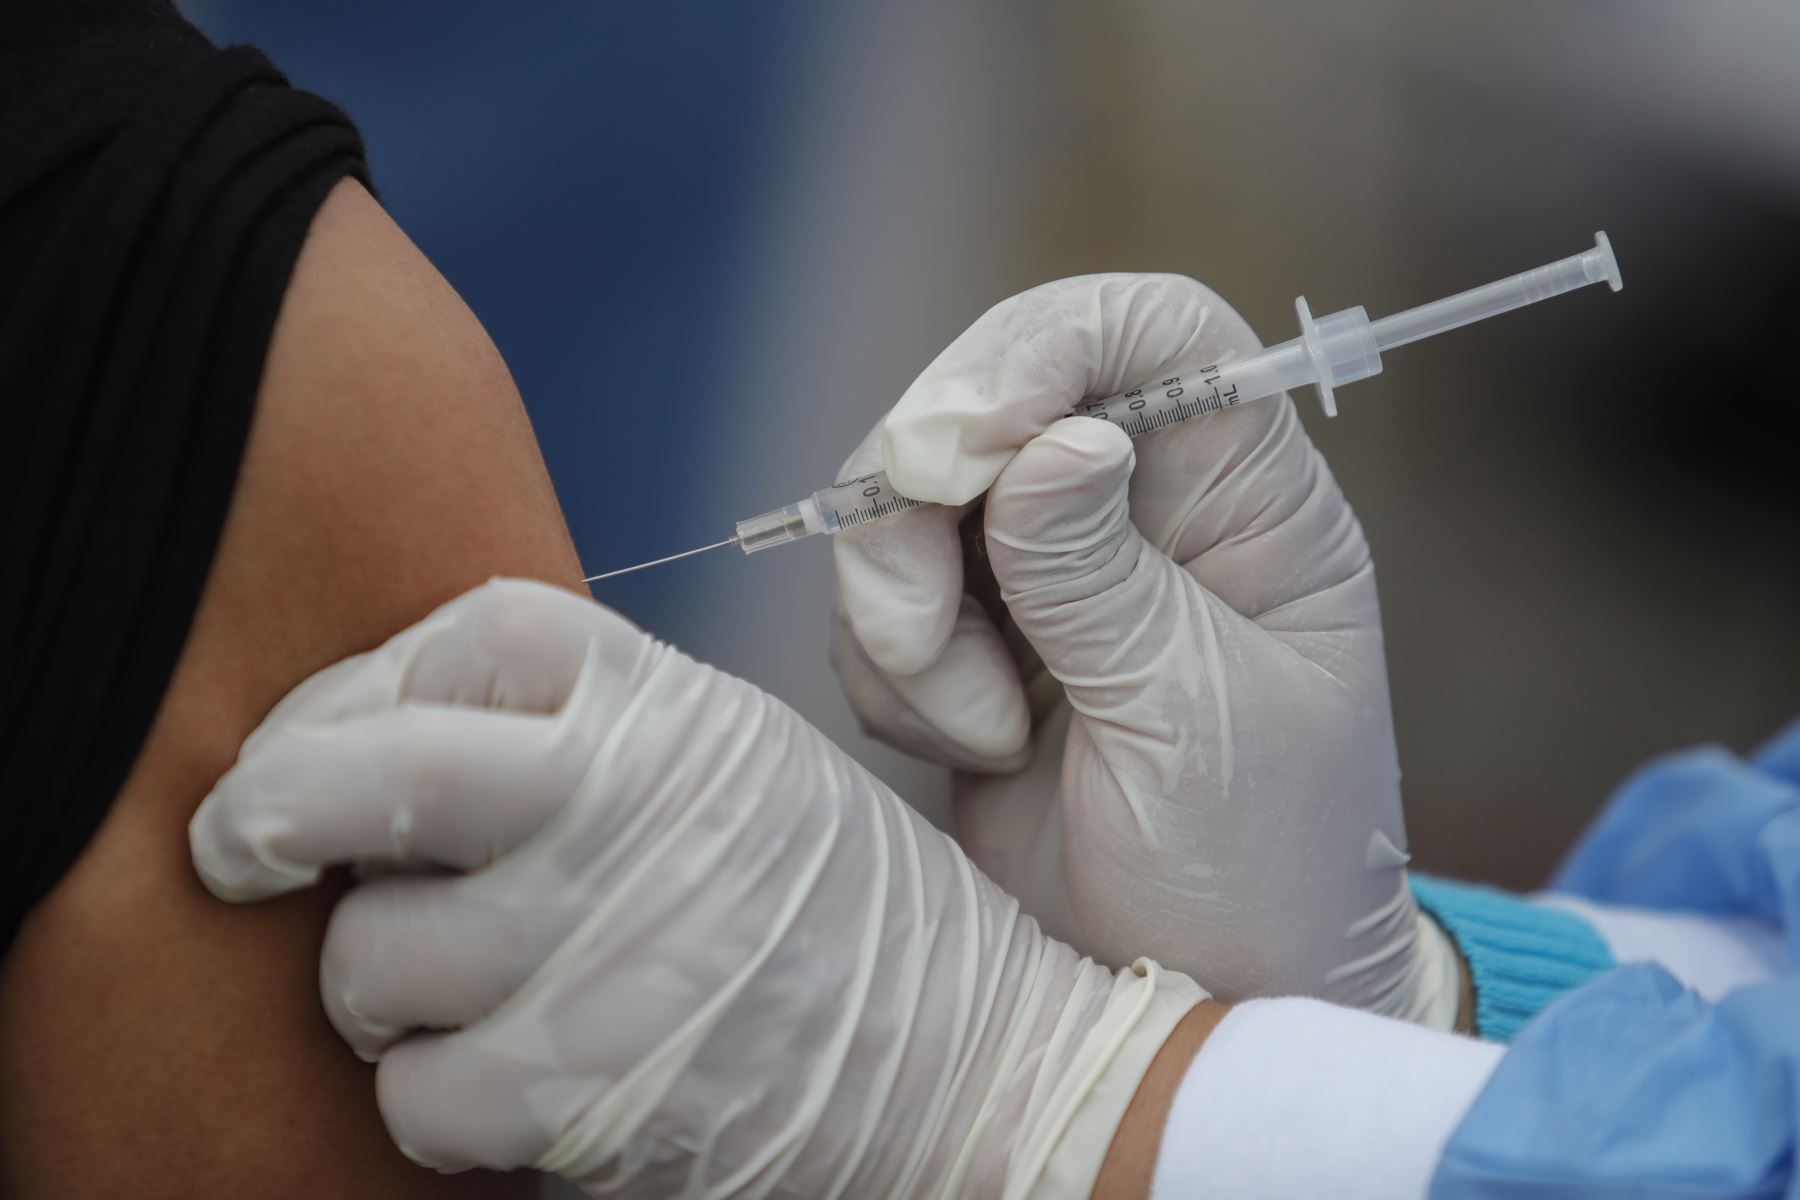 Los investigadores vieron que quienes recibieron una vacuna contra la gripe tenían un 12% menos de probabilidades de sufrir un ACV que quienes no la habían recibido (Andina)